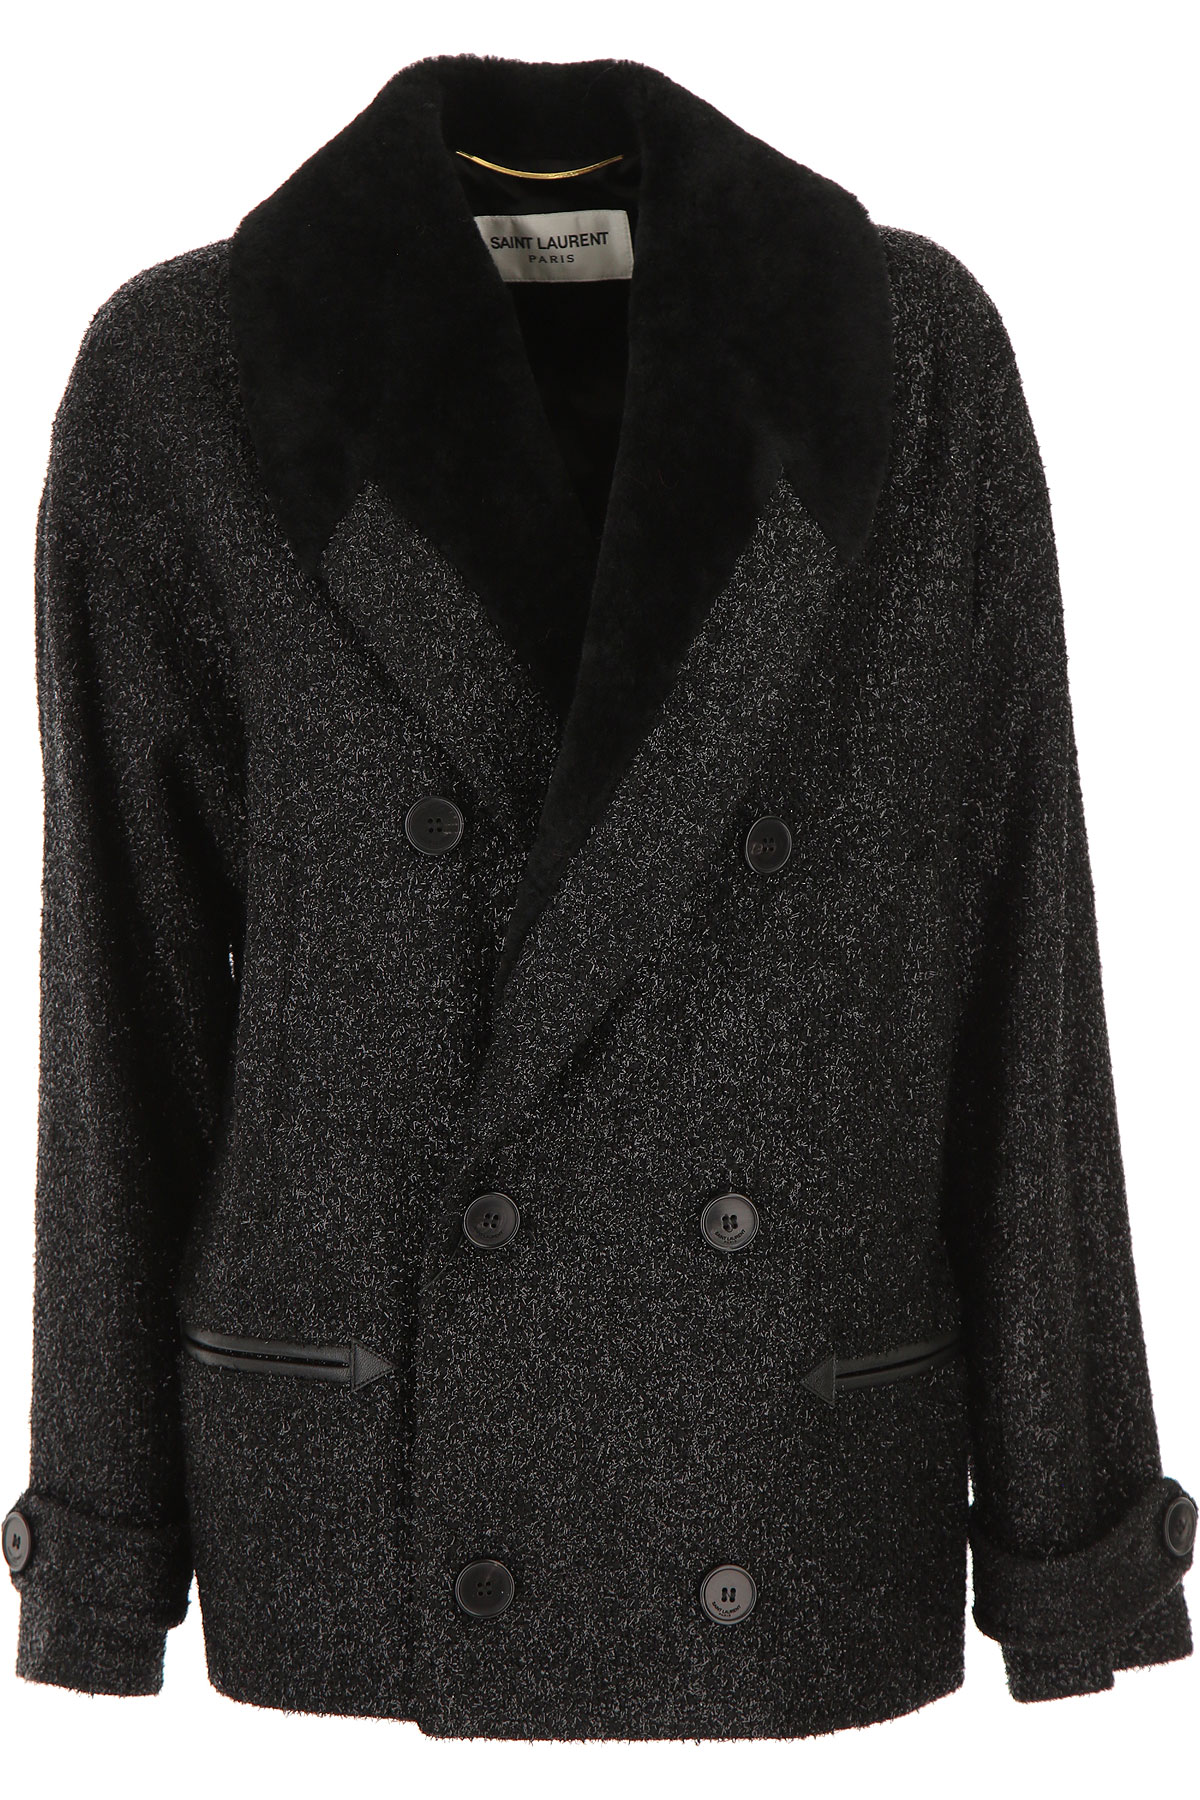 Yves Saint Laurent Jacke für Damen Günstig im Sale, Schwarz, Schurwolle, 2017, 36 38 40